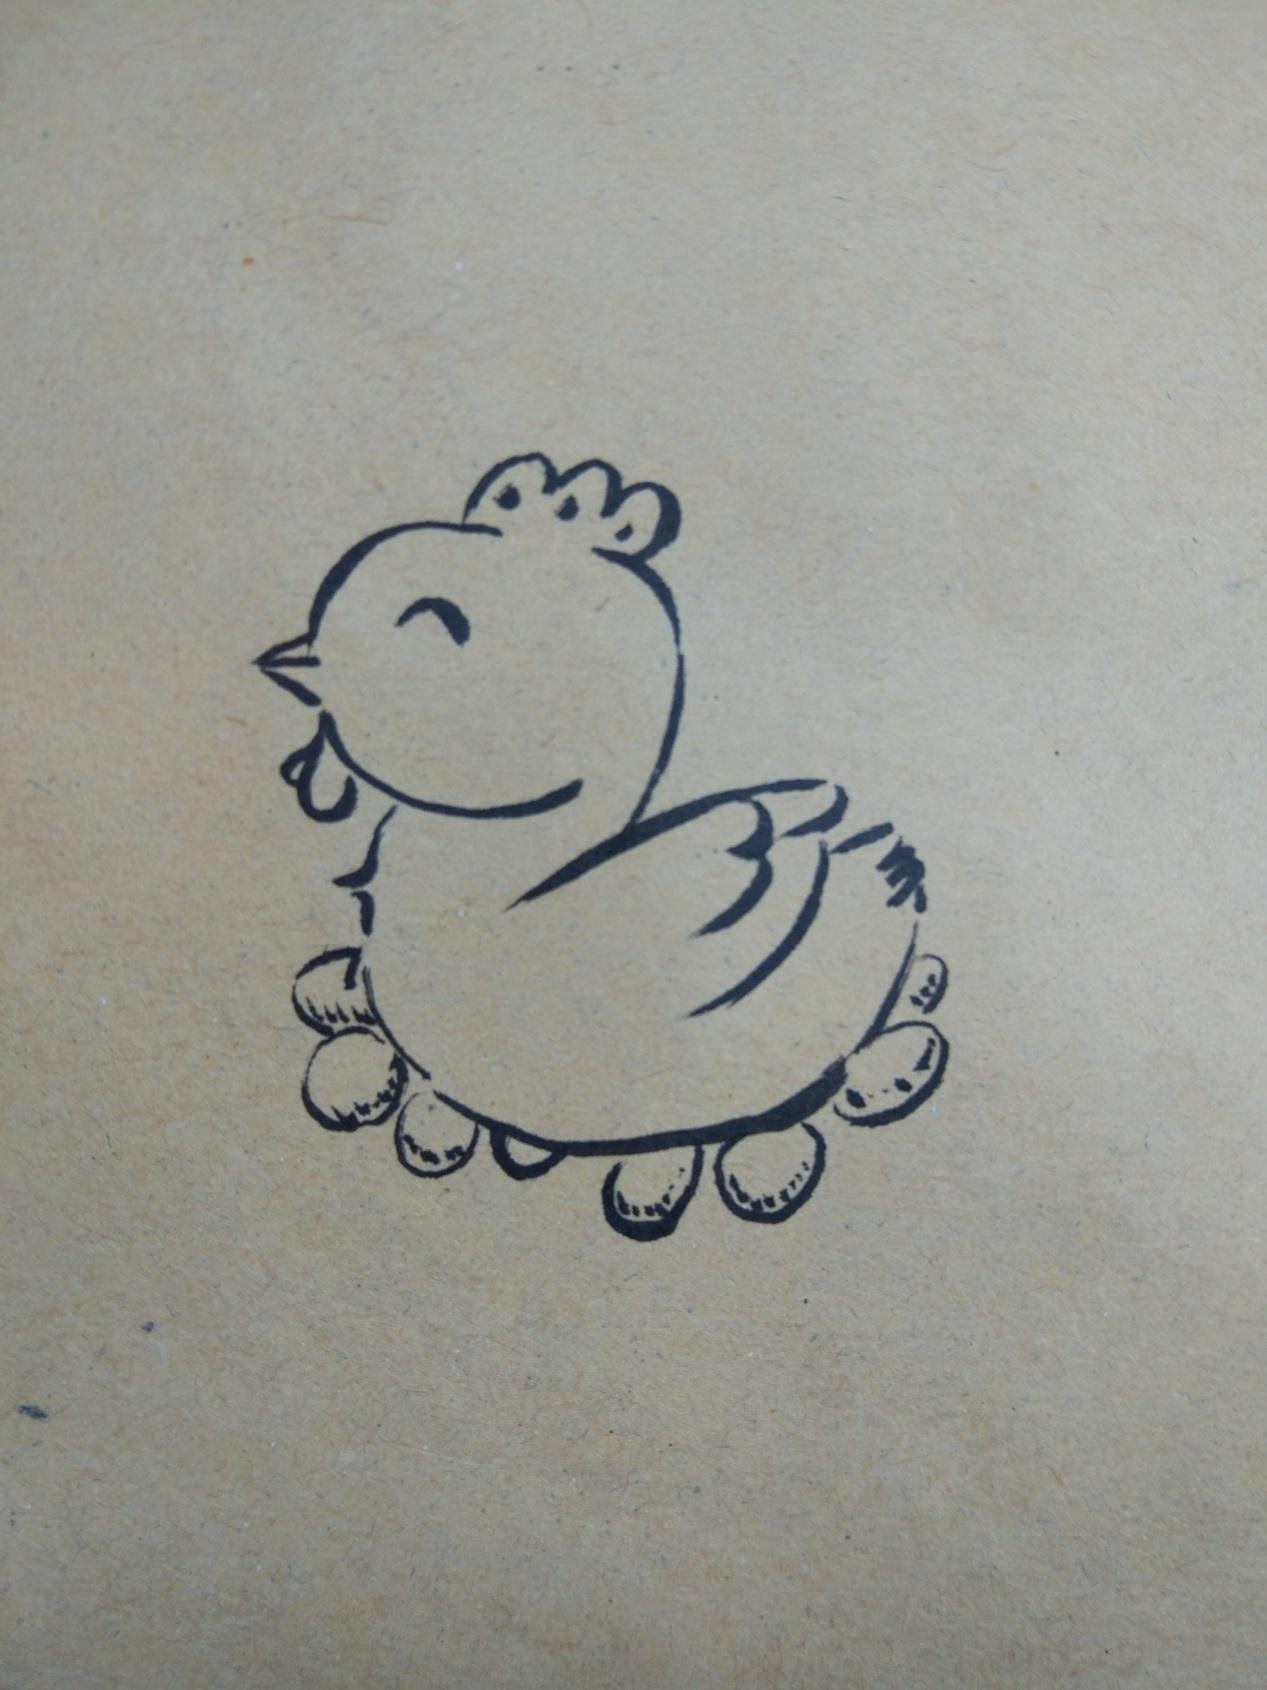 原创简单的彩绘画作品之可爱的卡通小鸡步骤图